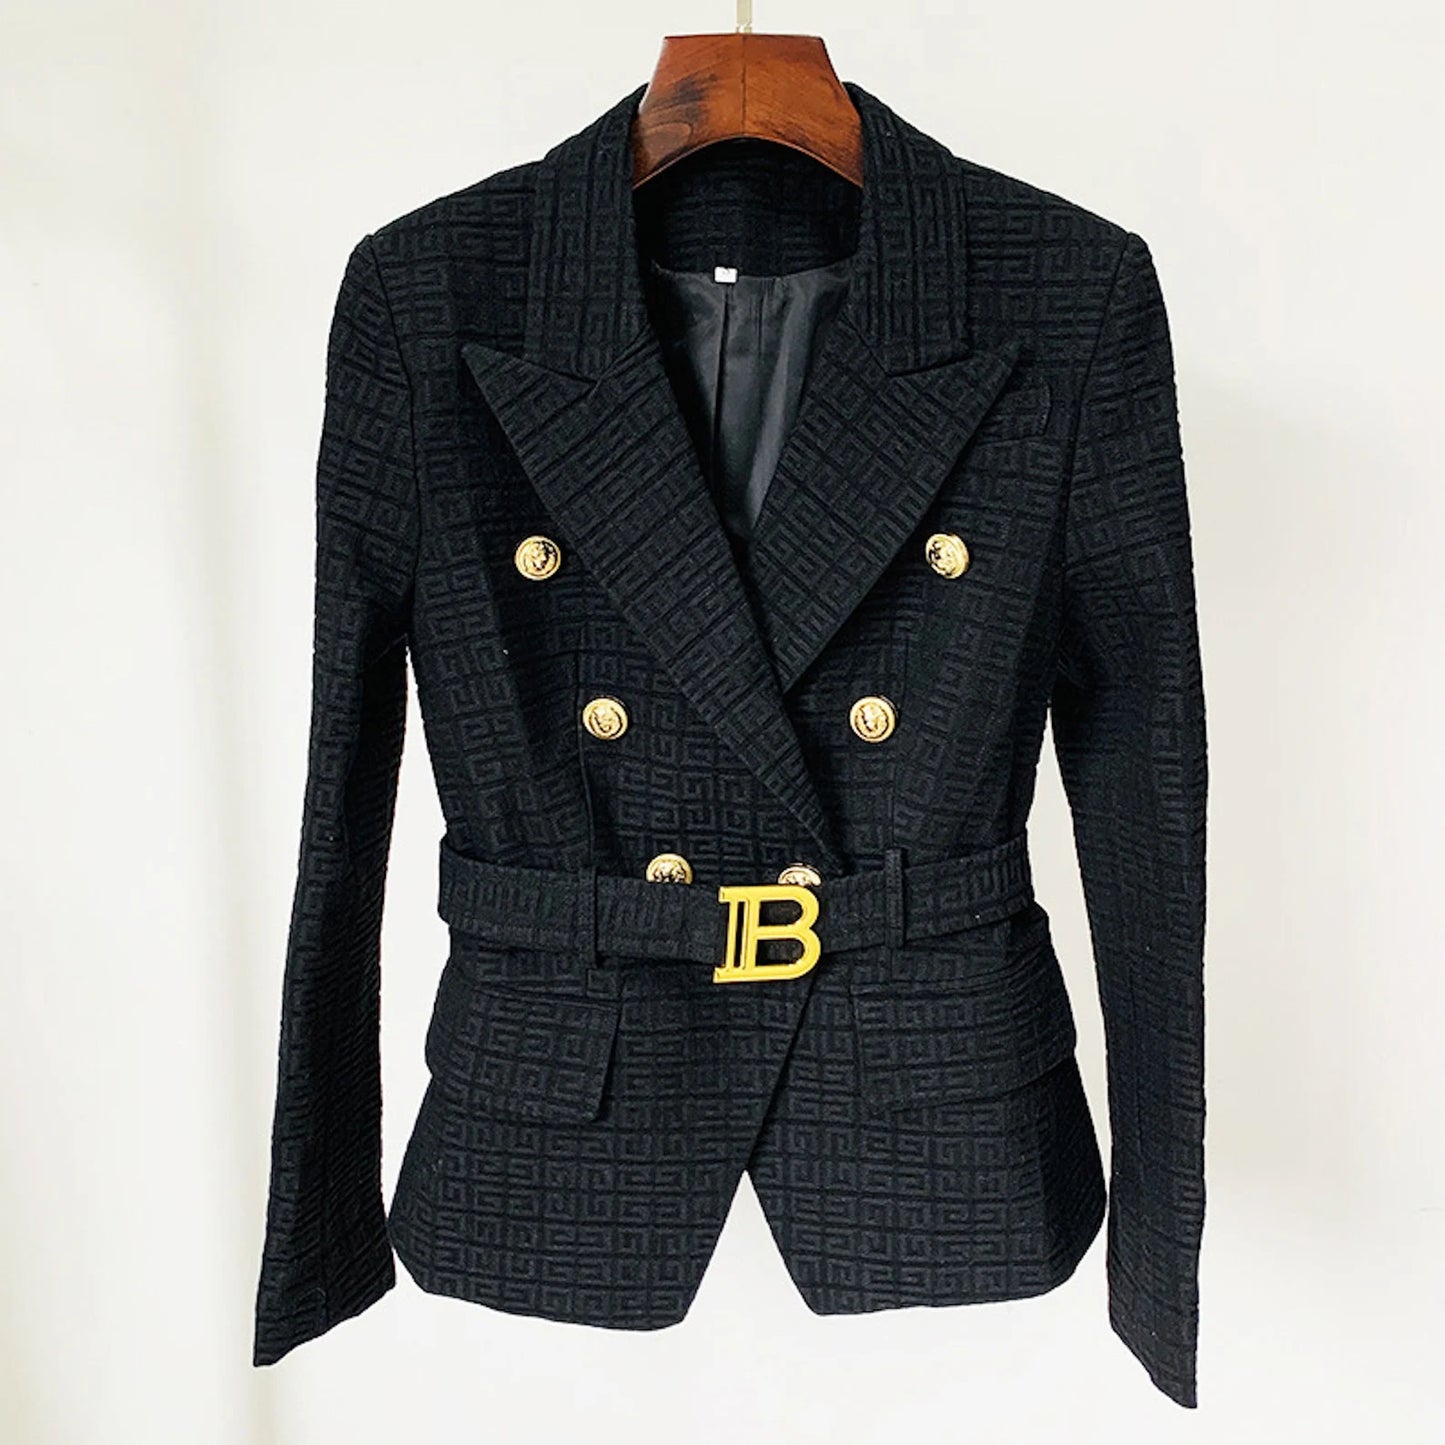 Maze Pattern Fitted Belted Jacket White/ Black/ Pink/ Beige Luxury Blazer